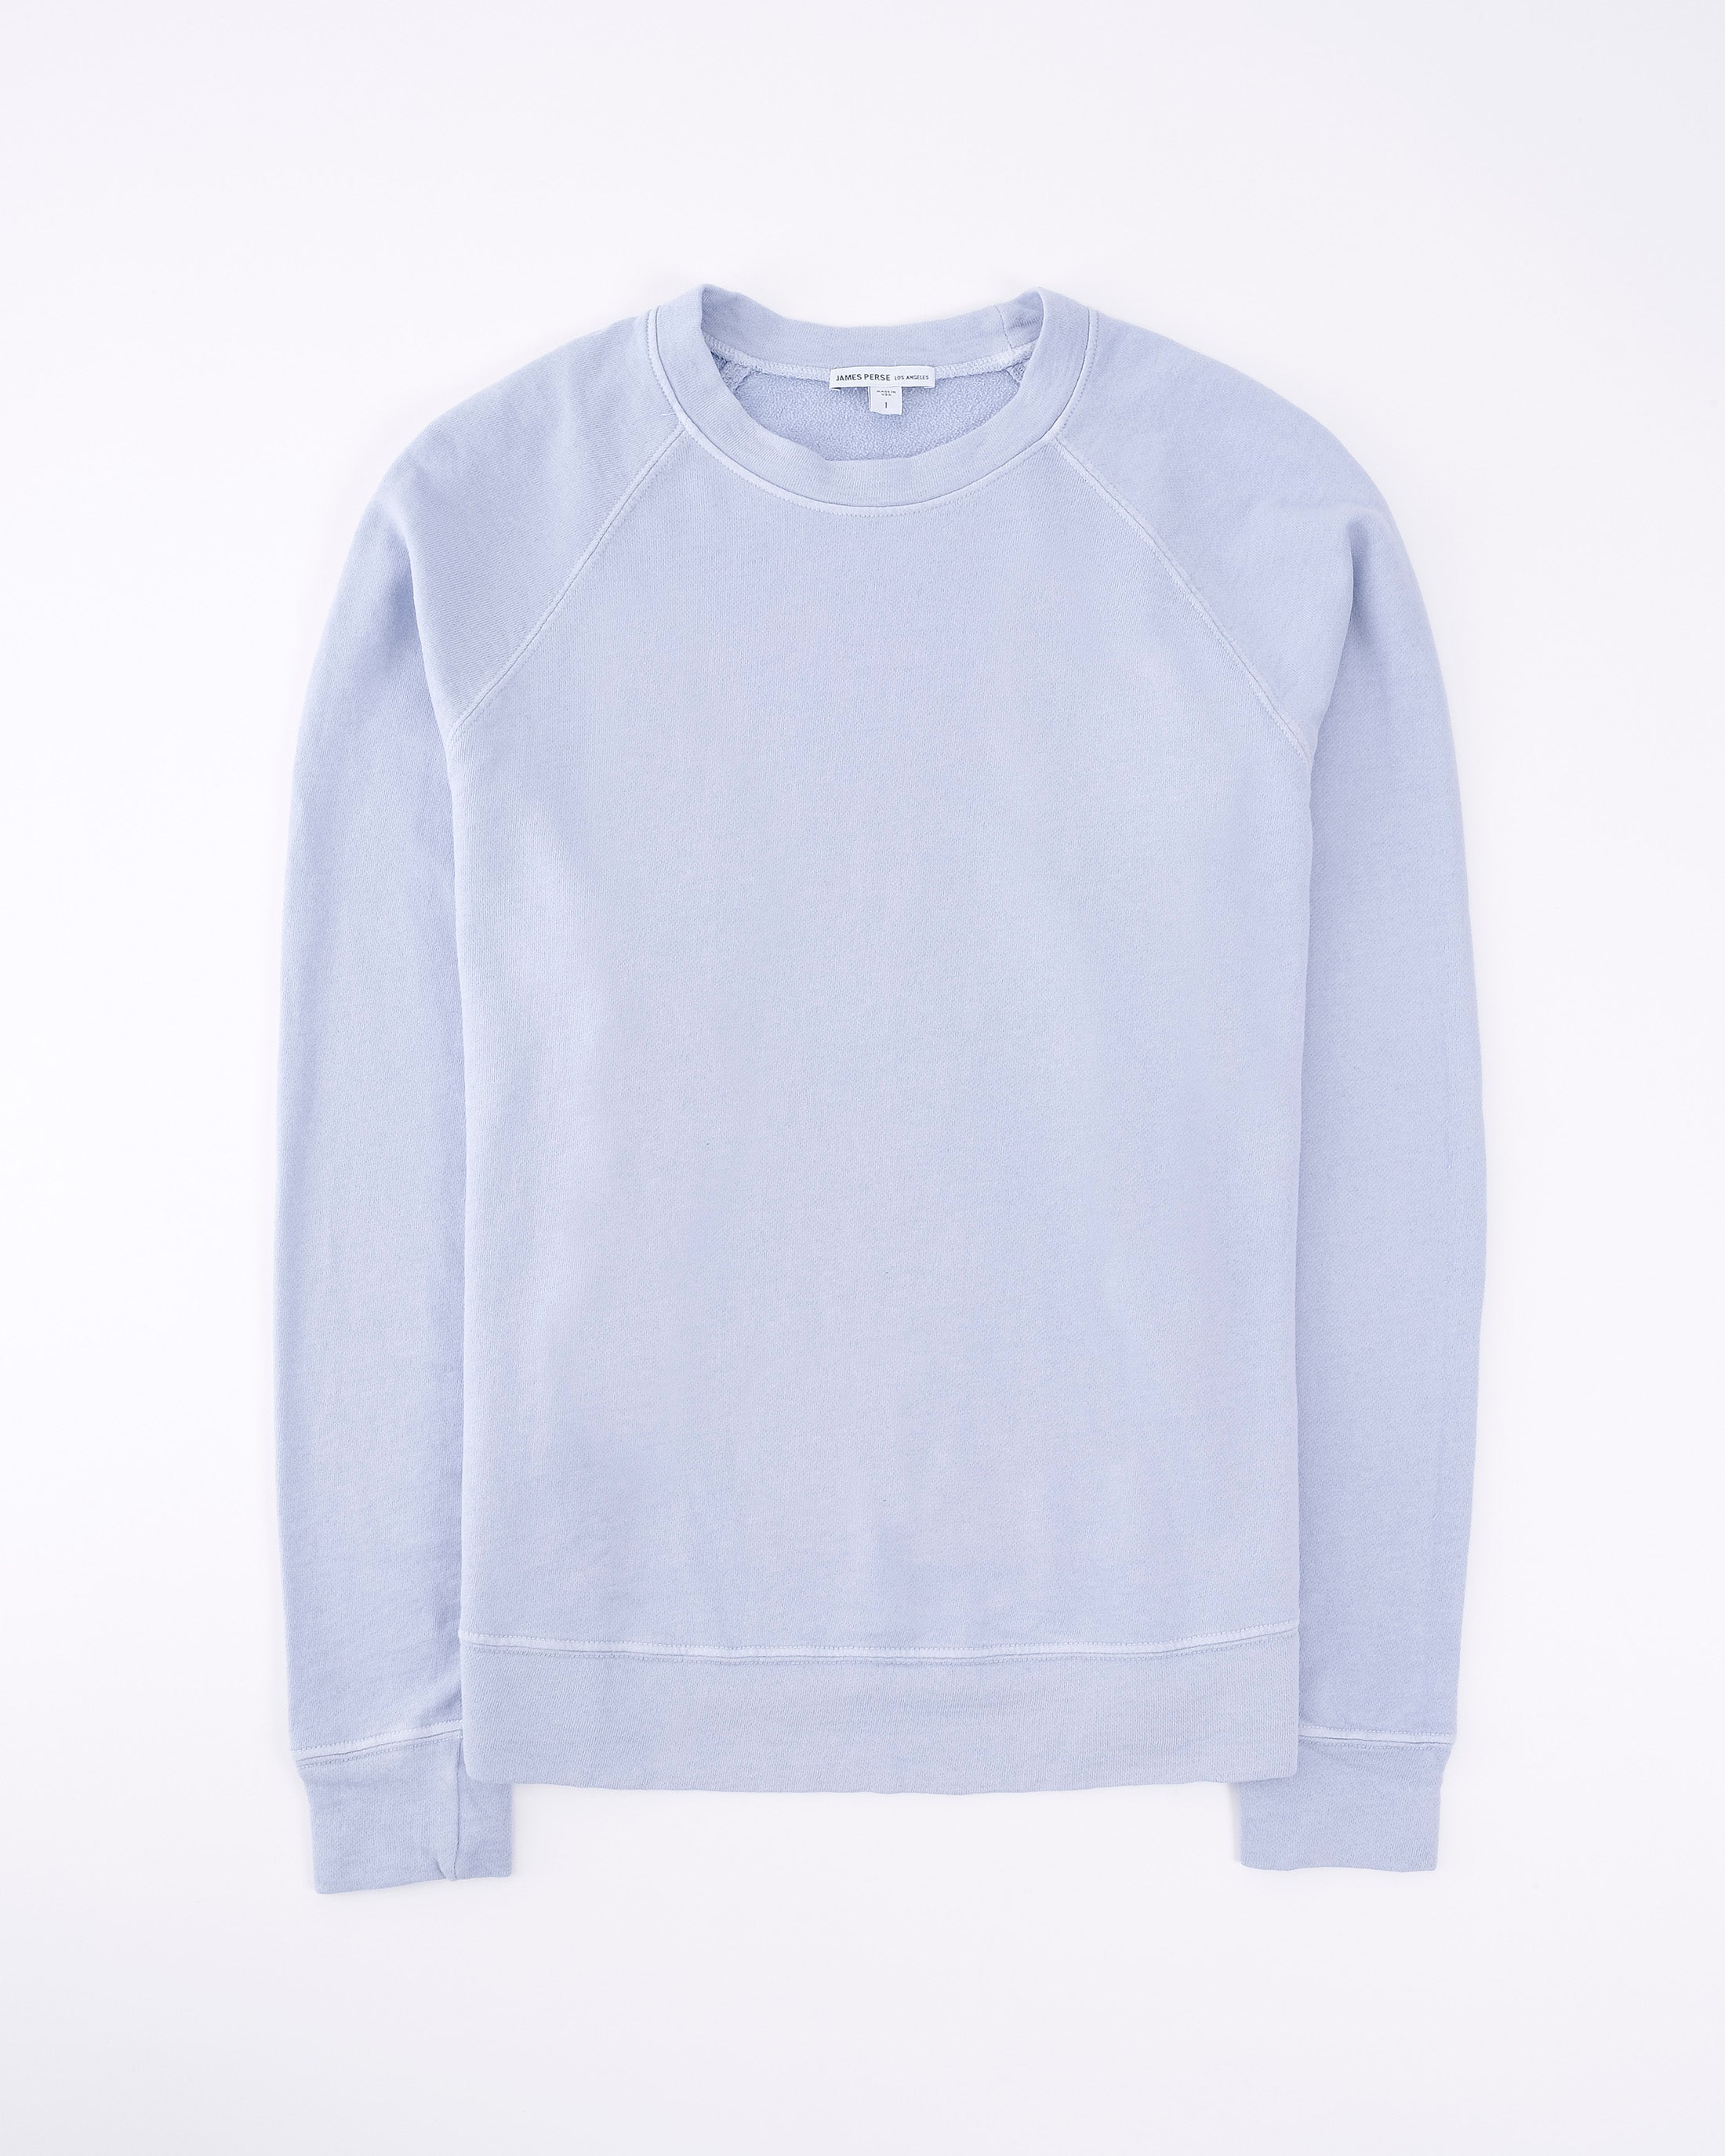 French Terry Raglan Sweatshirt / Open Sky Pigment